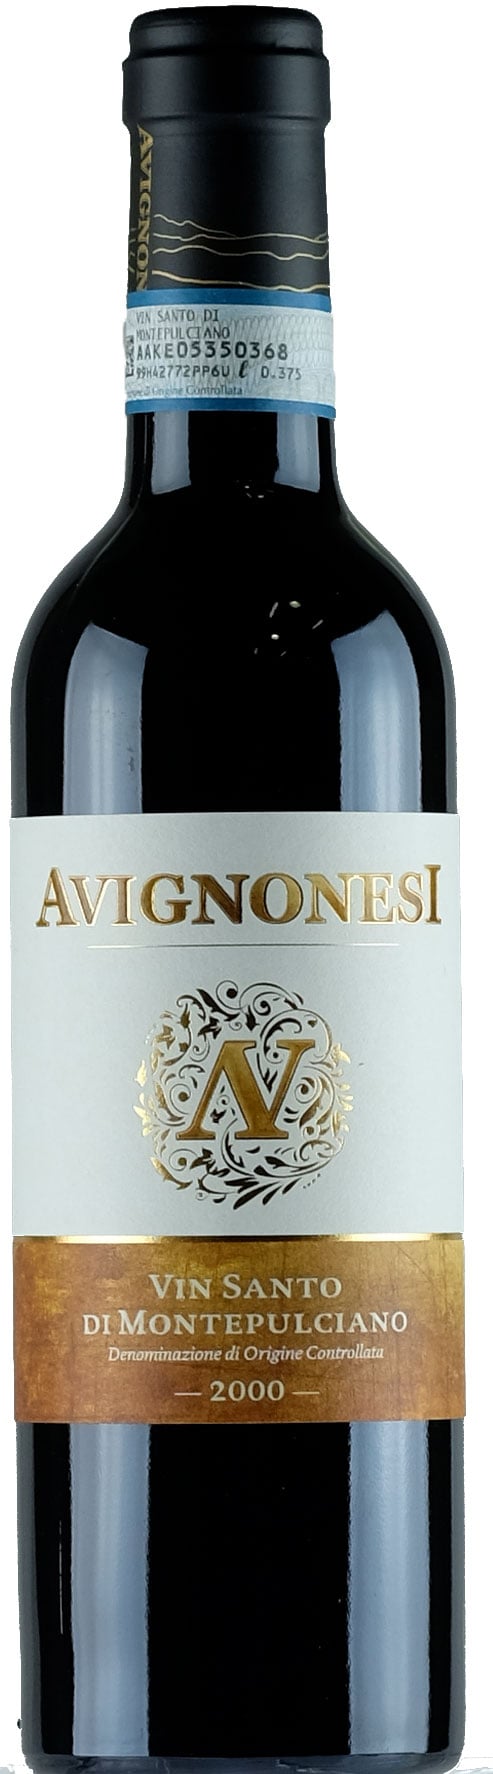 Avignonesi Vin Santo